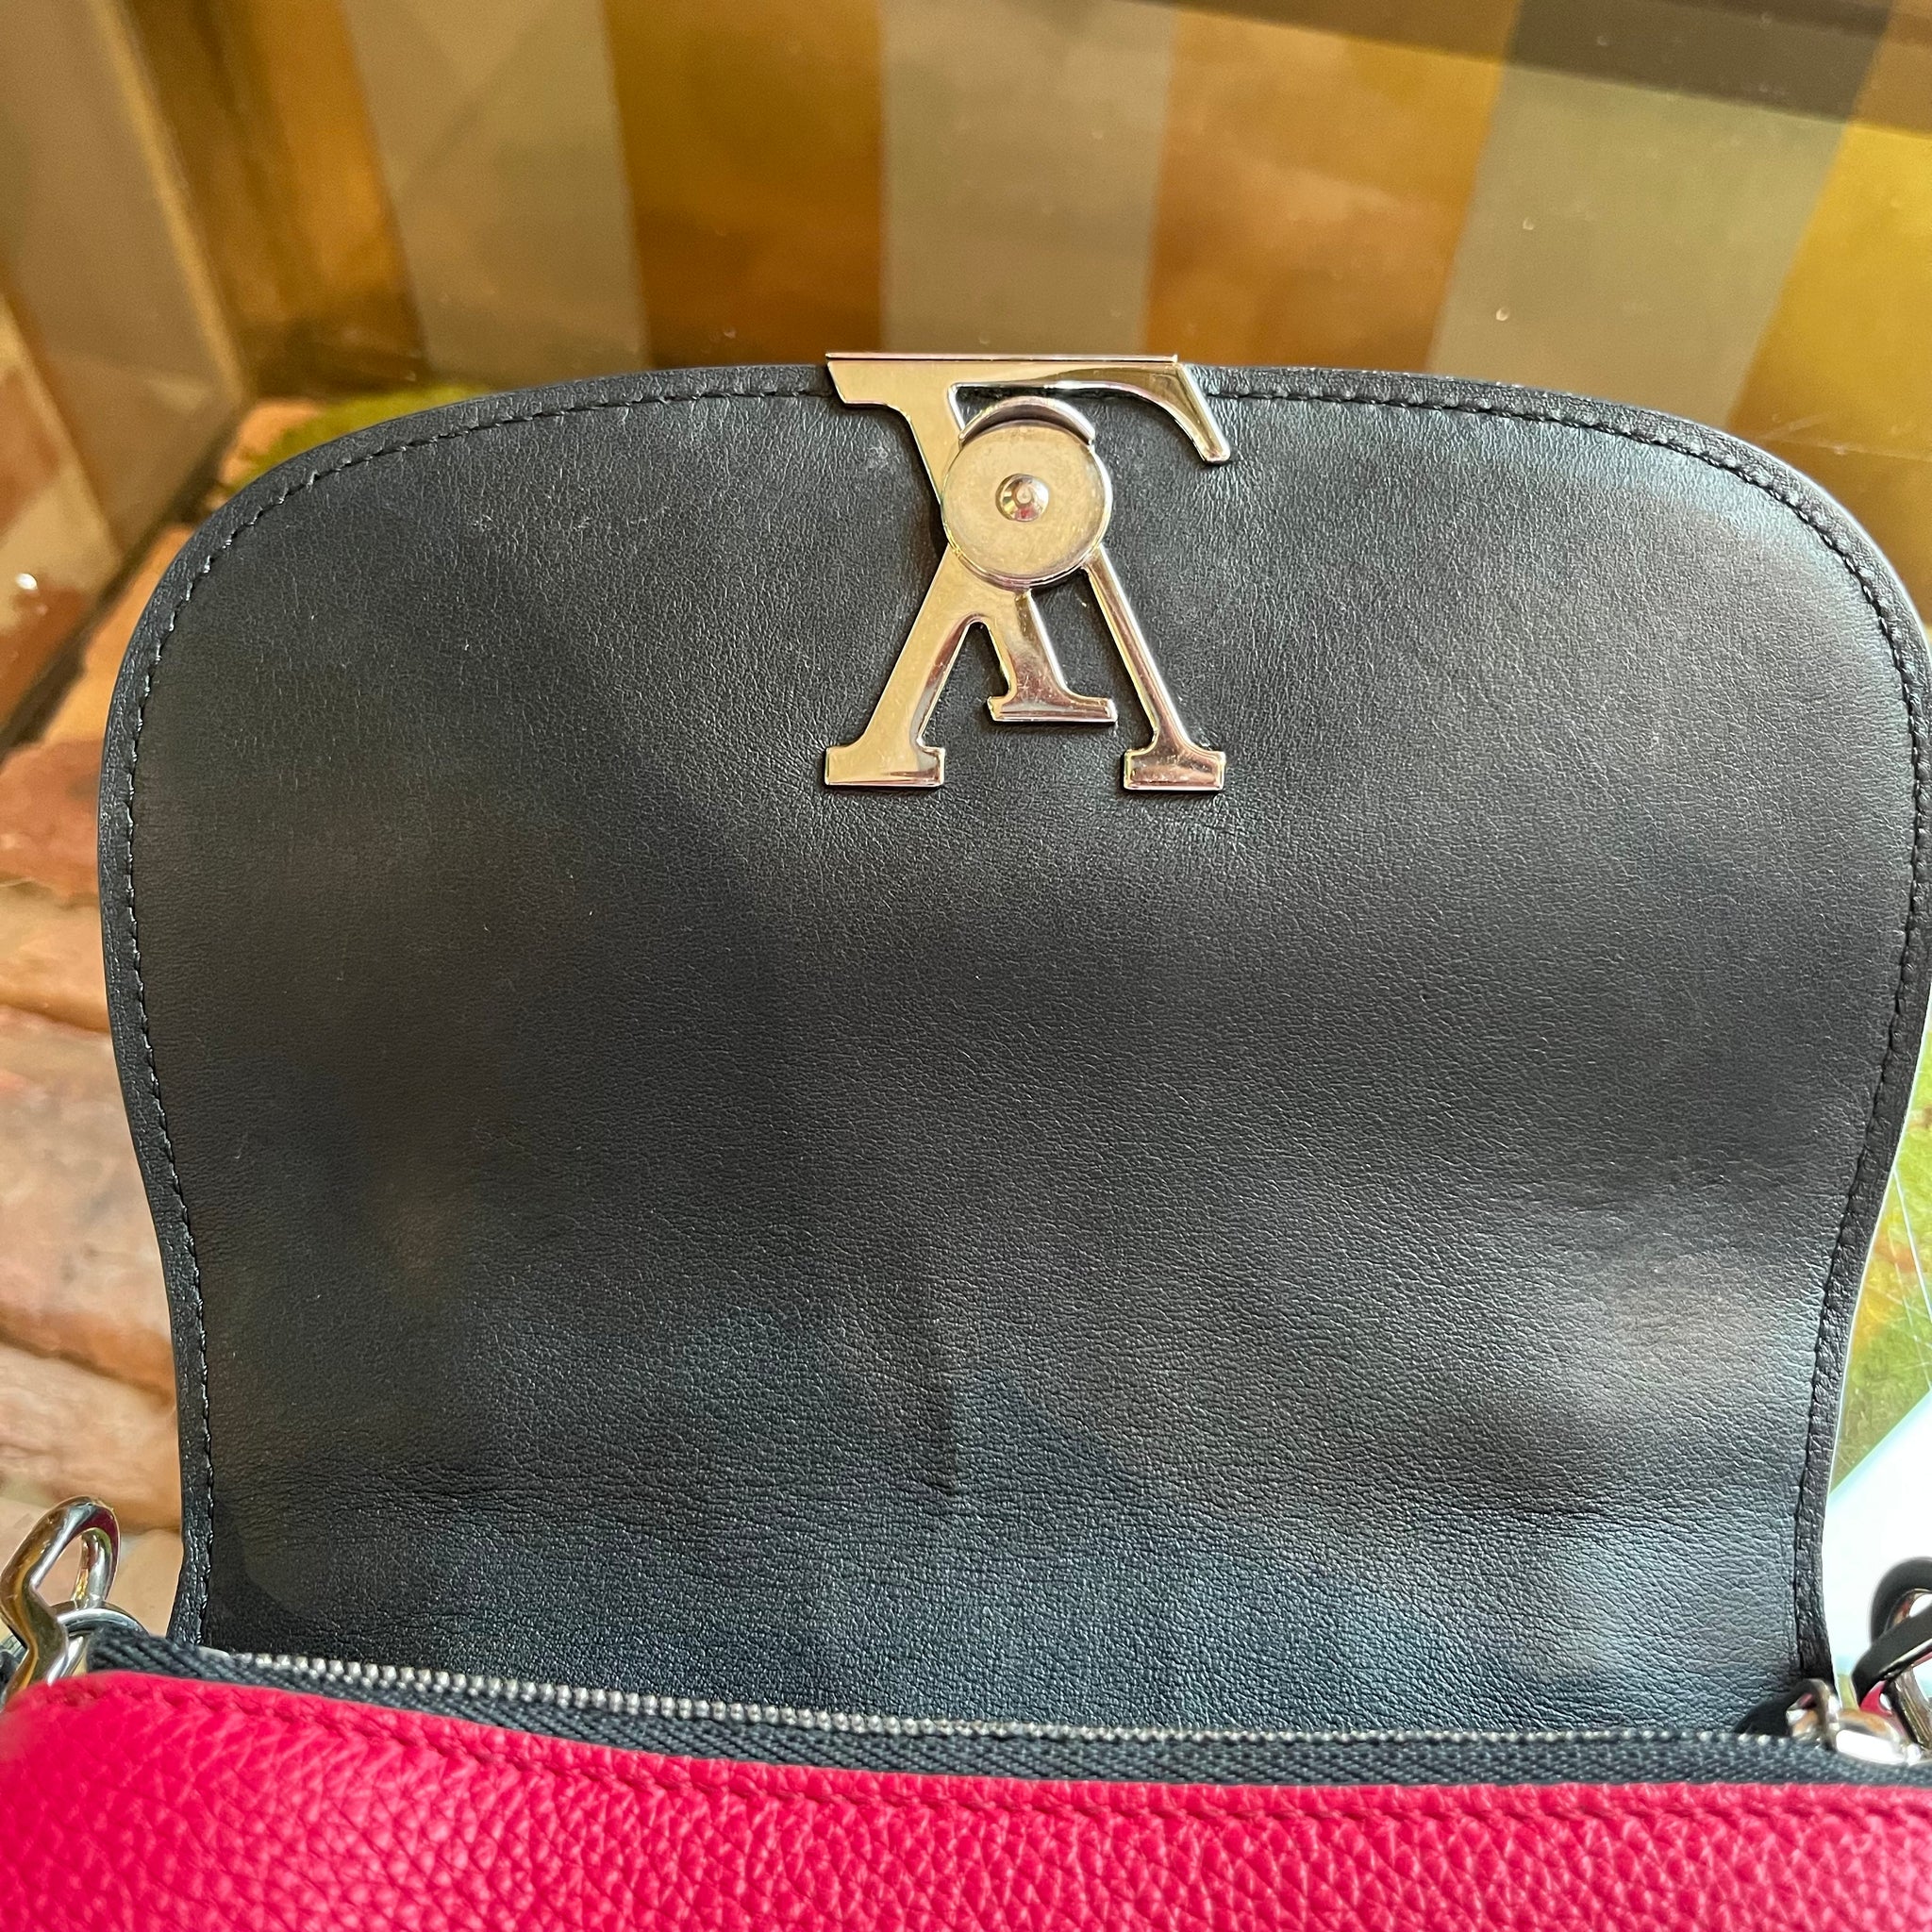 Louis Vuitton Pink Leather Vivienne NM Shoulder Bag